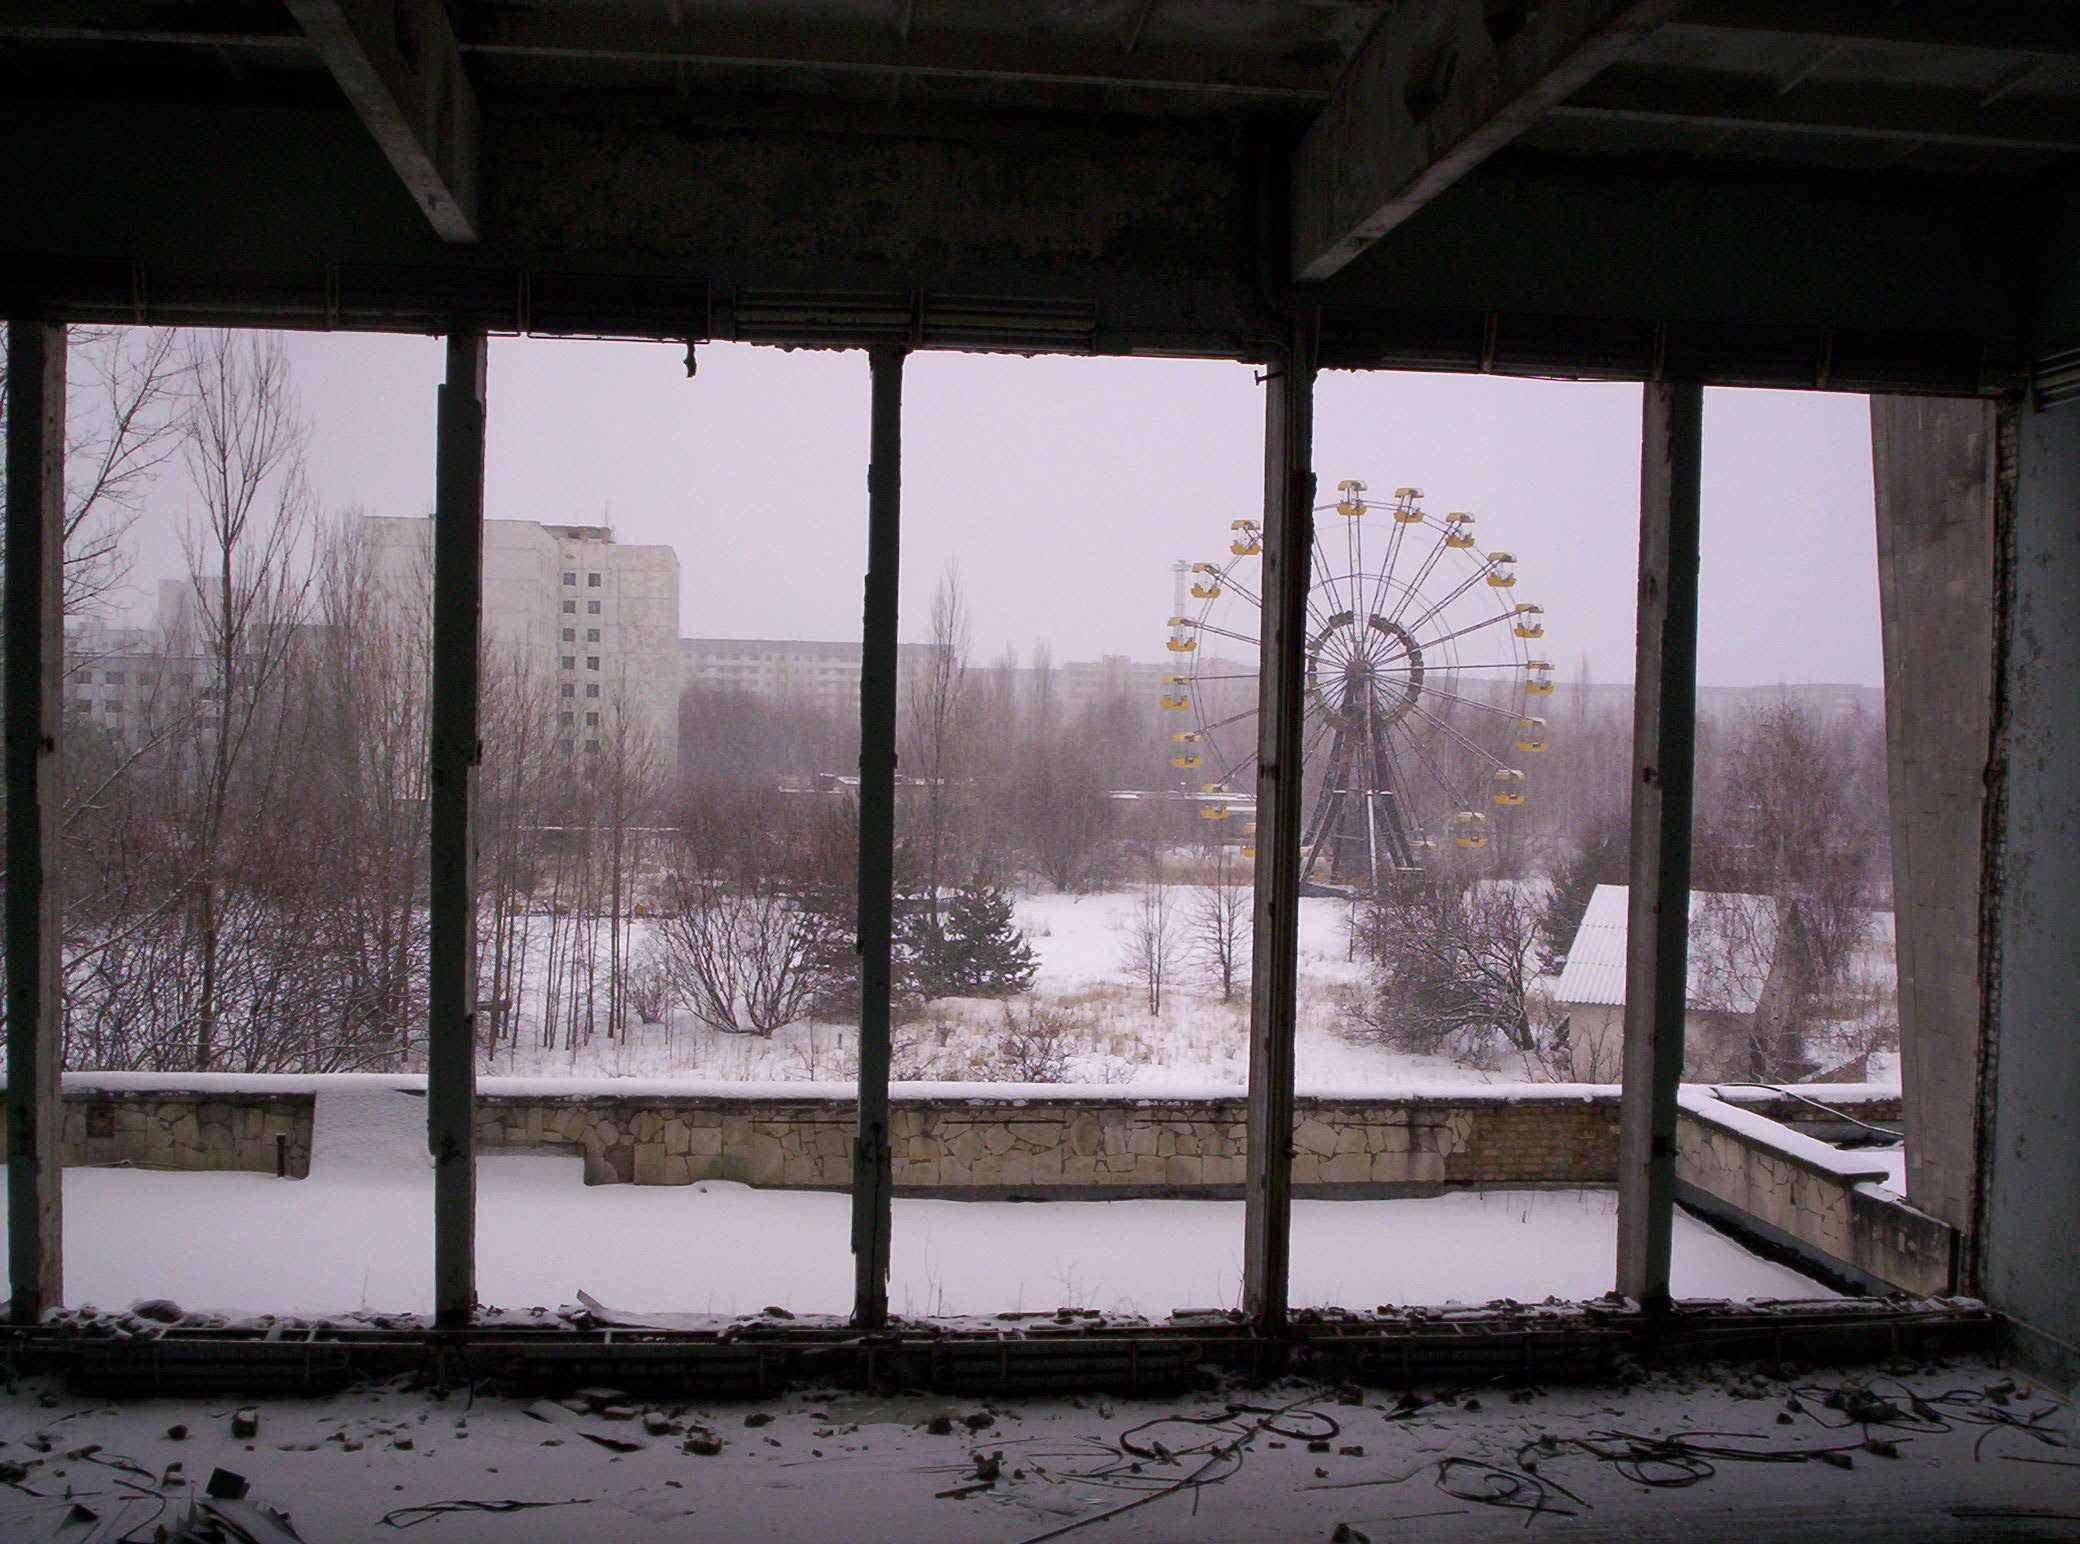 Скачать обои Чернобыль на телефон бесплатно